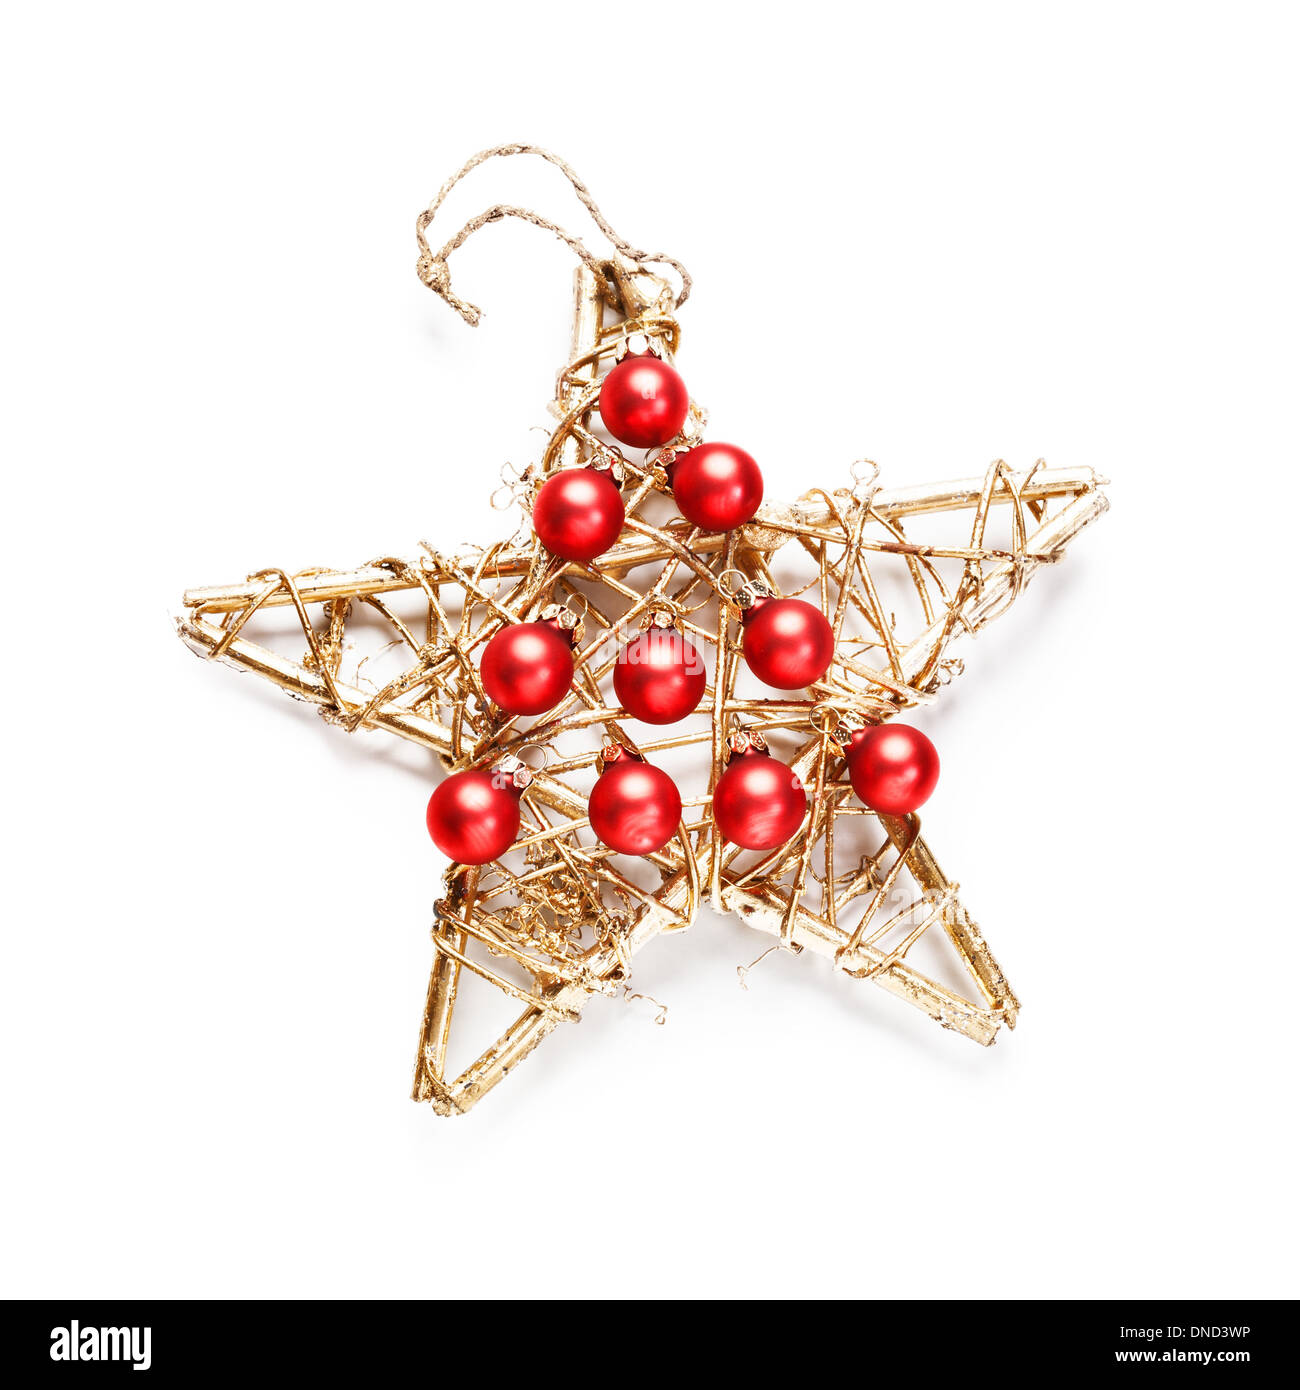 Weihnachts-Dekoration mit roten Kugeln als Weihnachtsbaum und hölzernen Goldstern auf weißem Hintergrund Stockfoto